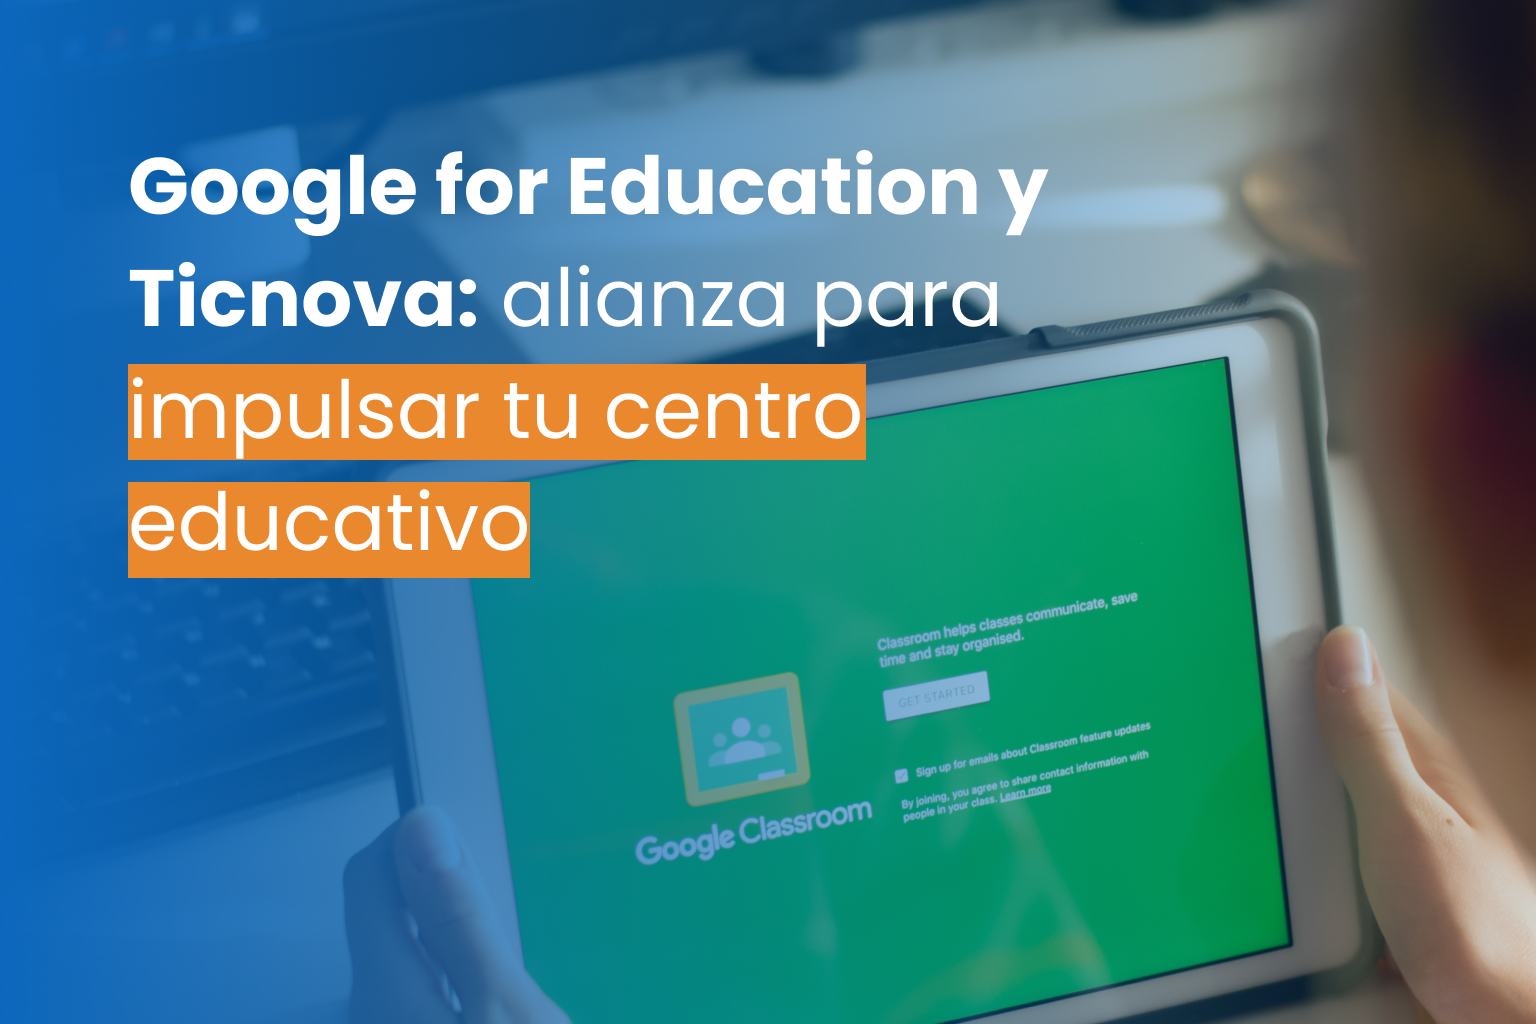 Google for Education y Ticnova: la alianza clave para impulsar tu centro educativo